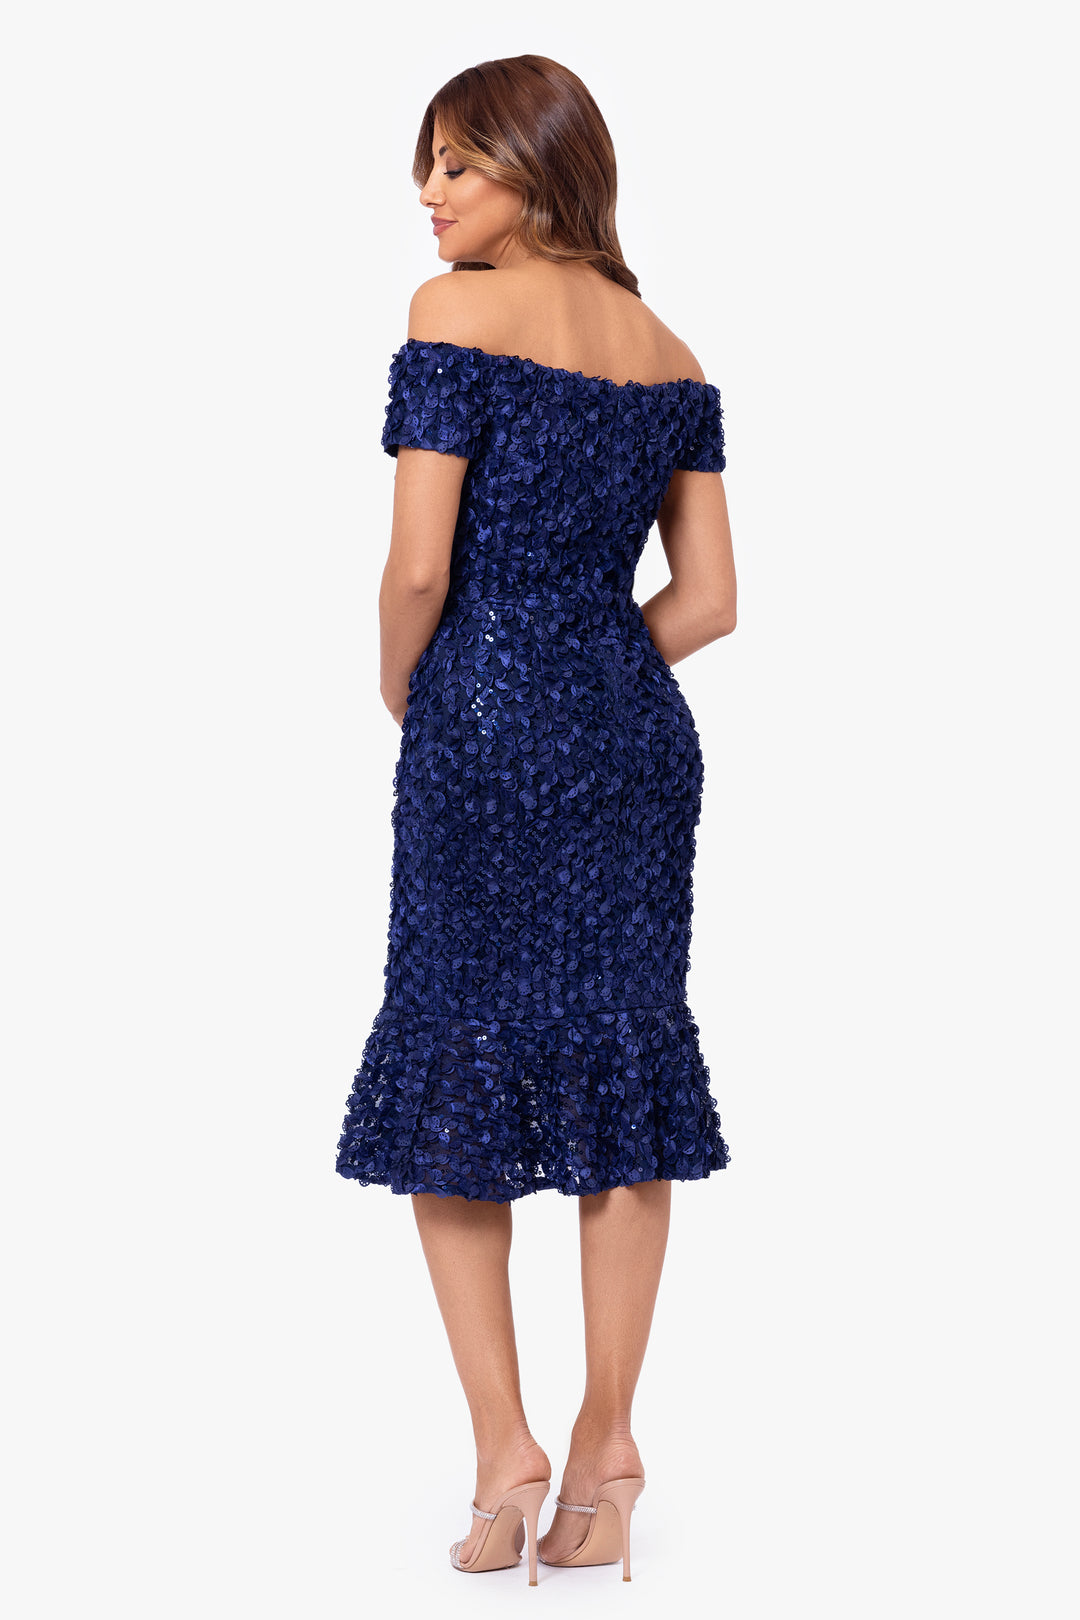 "Luna" Sequin Embellished Off the Shoulder Flounce Knee Length Dress